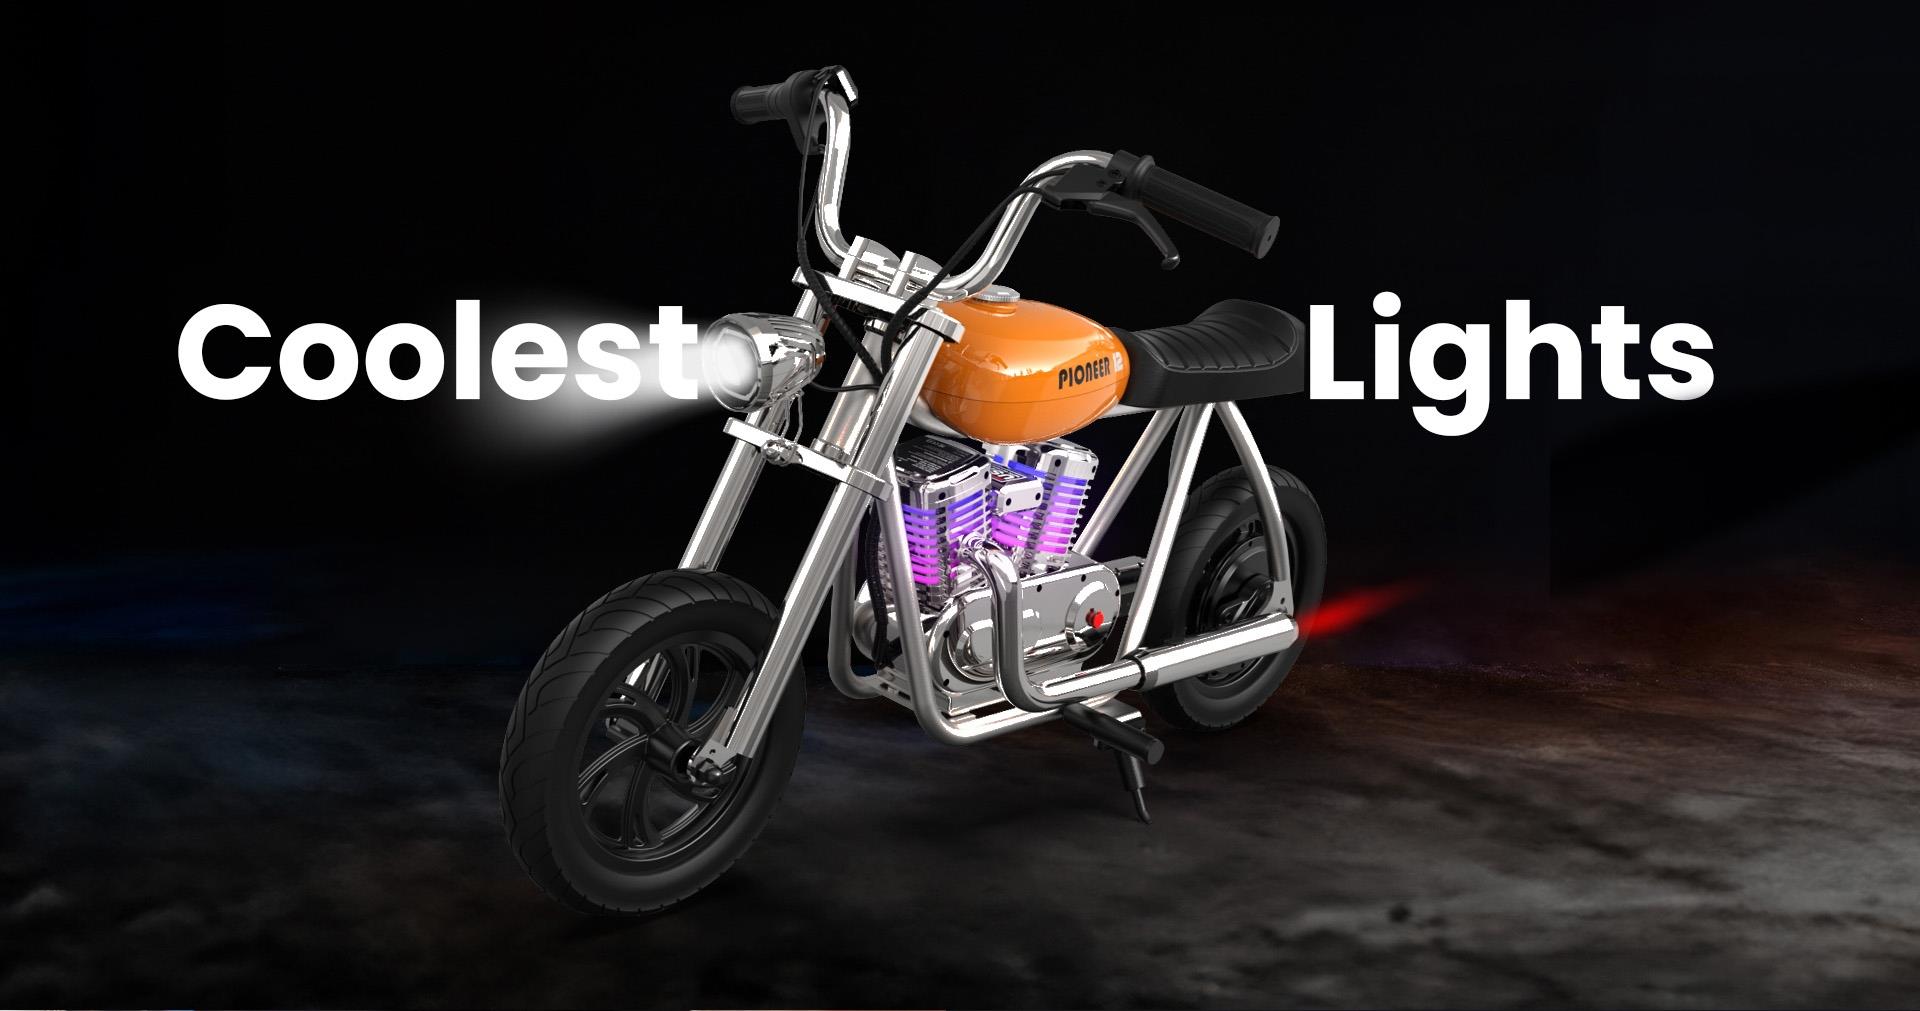 HYPER GOGO Pioneer 12 Plus mit App Elektro-Motorrad für Kinder, 5.2Ah 160W mit 12x3 Reifen, 12KM Reichweite - Blau